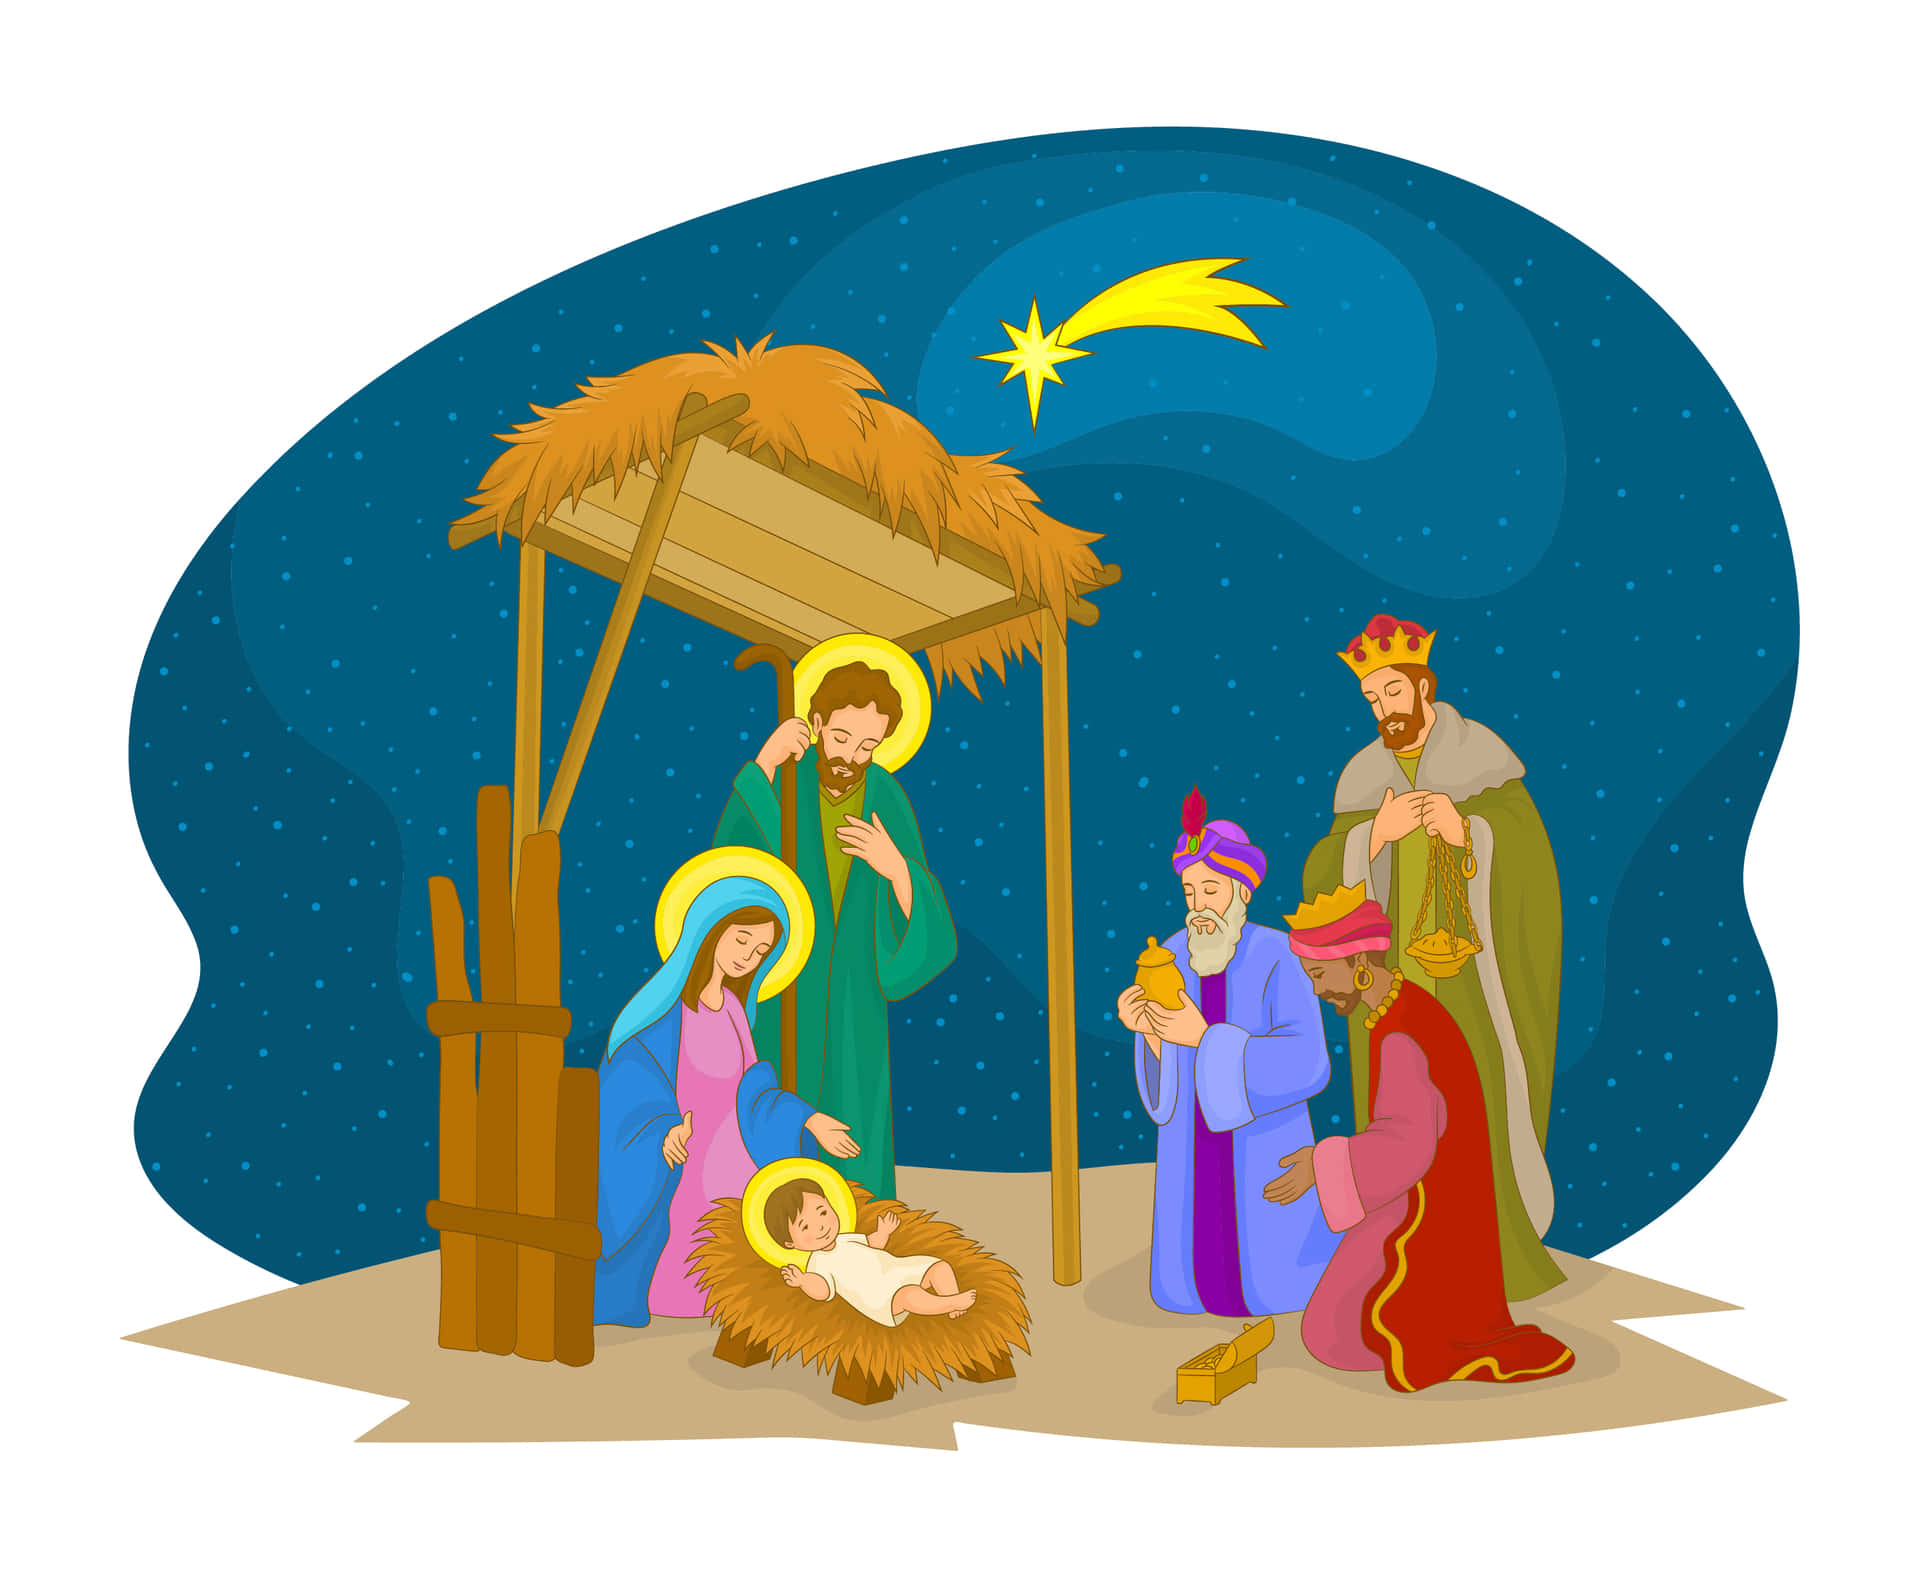 Laescena De La Natividad Ilustra El Nacimiento De Jesucristo.